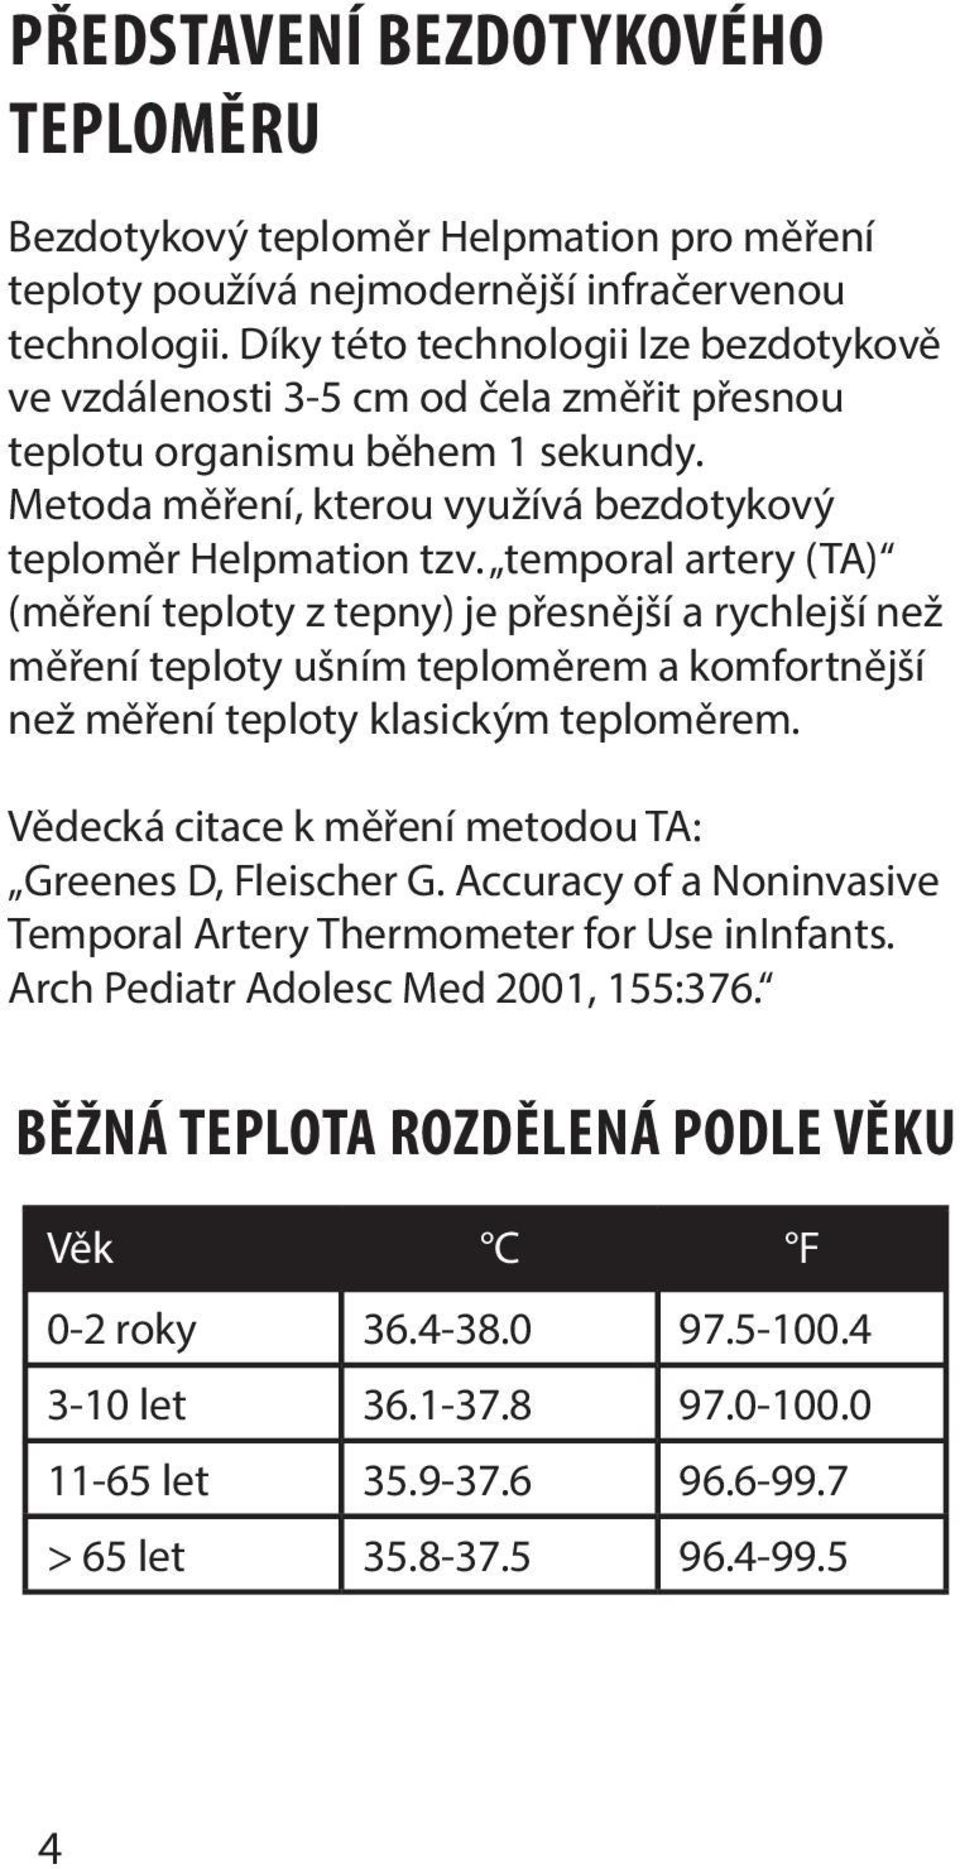 temporal artery (TA) (měření teploty z tepny) je přesnější a rychlejší než měření teploty ušním teploměrem a komfortnější než měření teploty klasickým teploměrem.